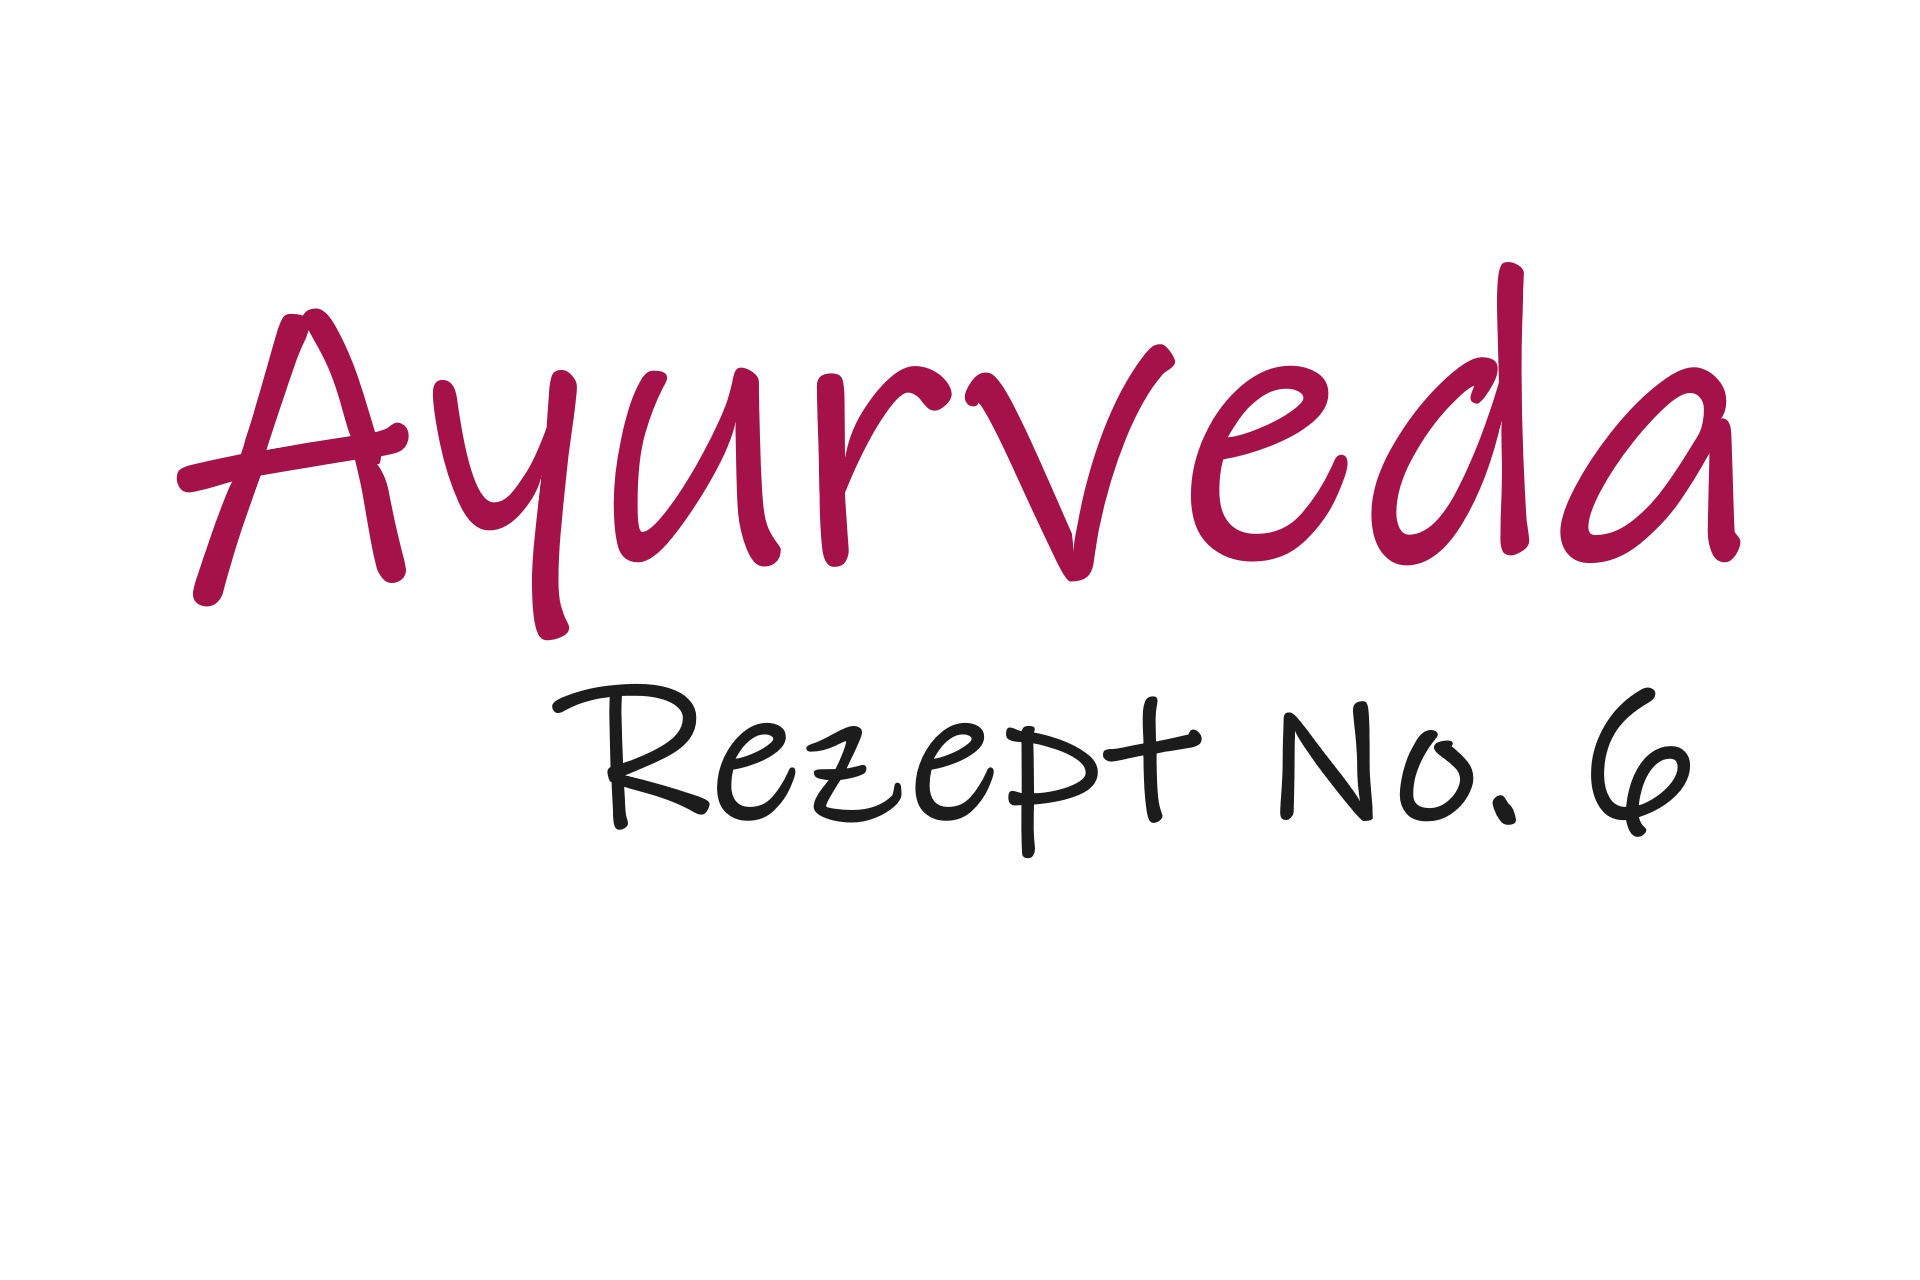 Schriftzug Ayurveda-Rezept No. 6 (Knuspermüsli)